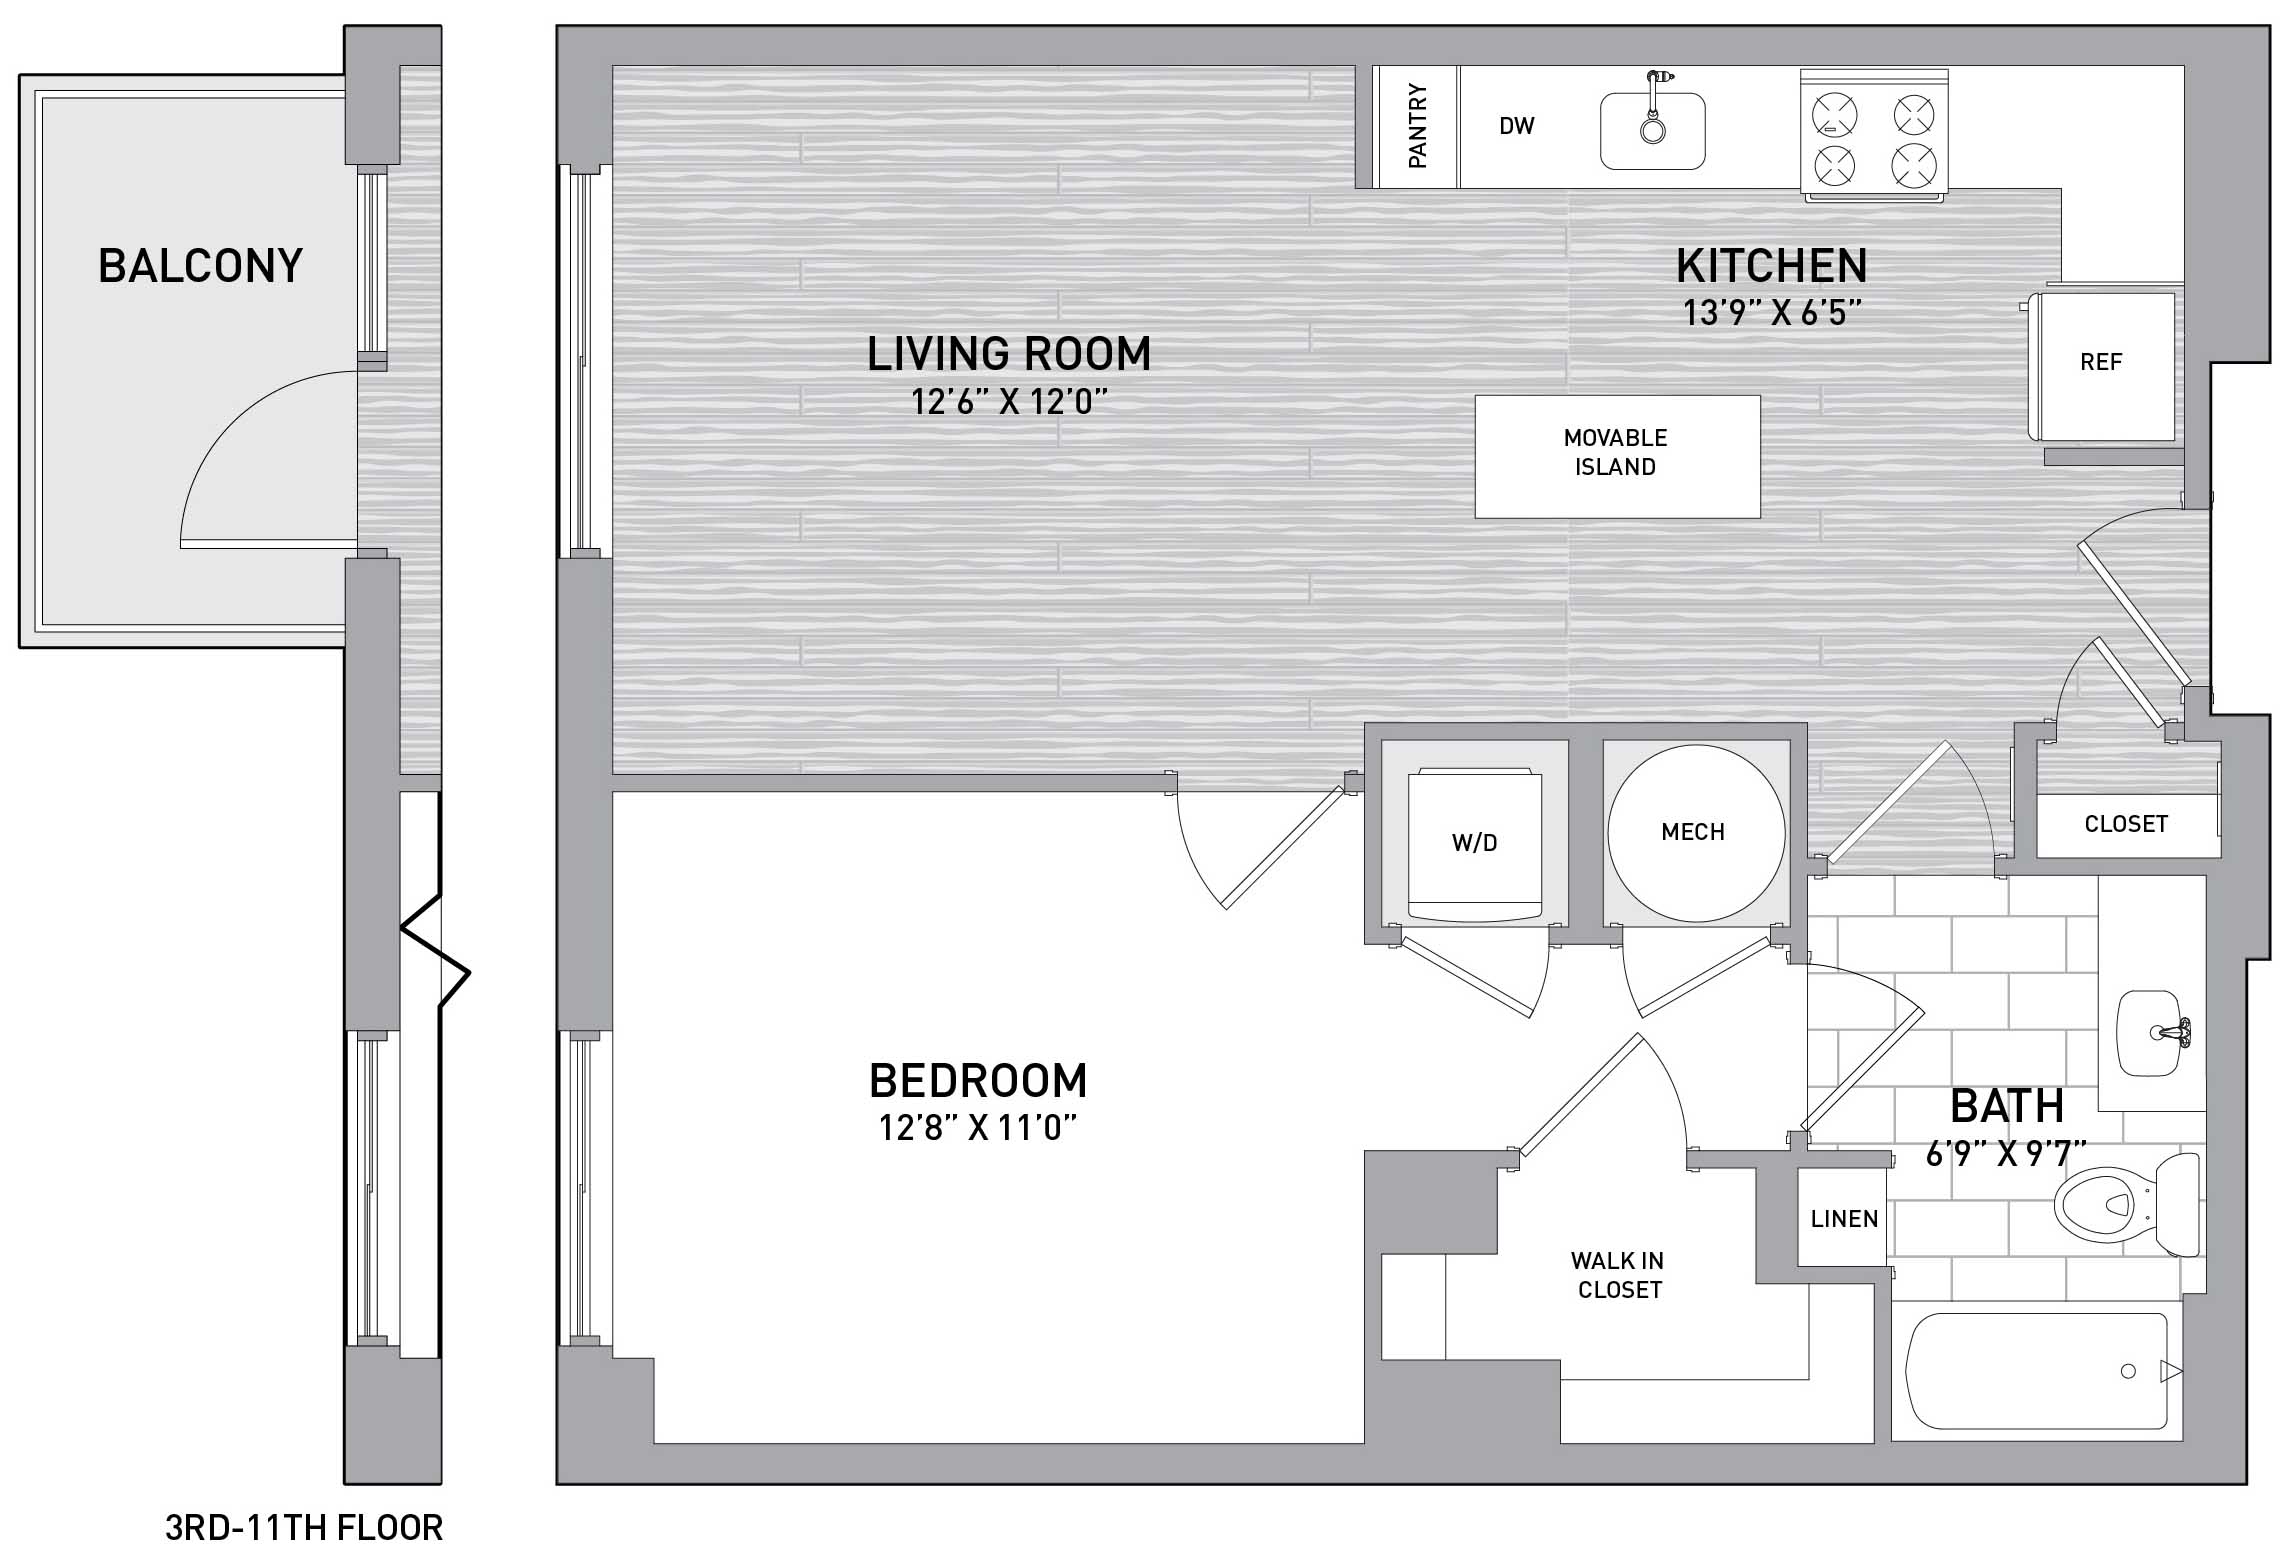 Floorplan Image of unit 151-0905